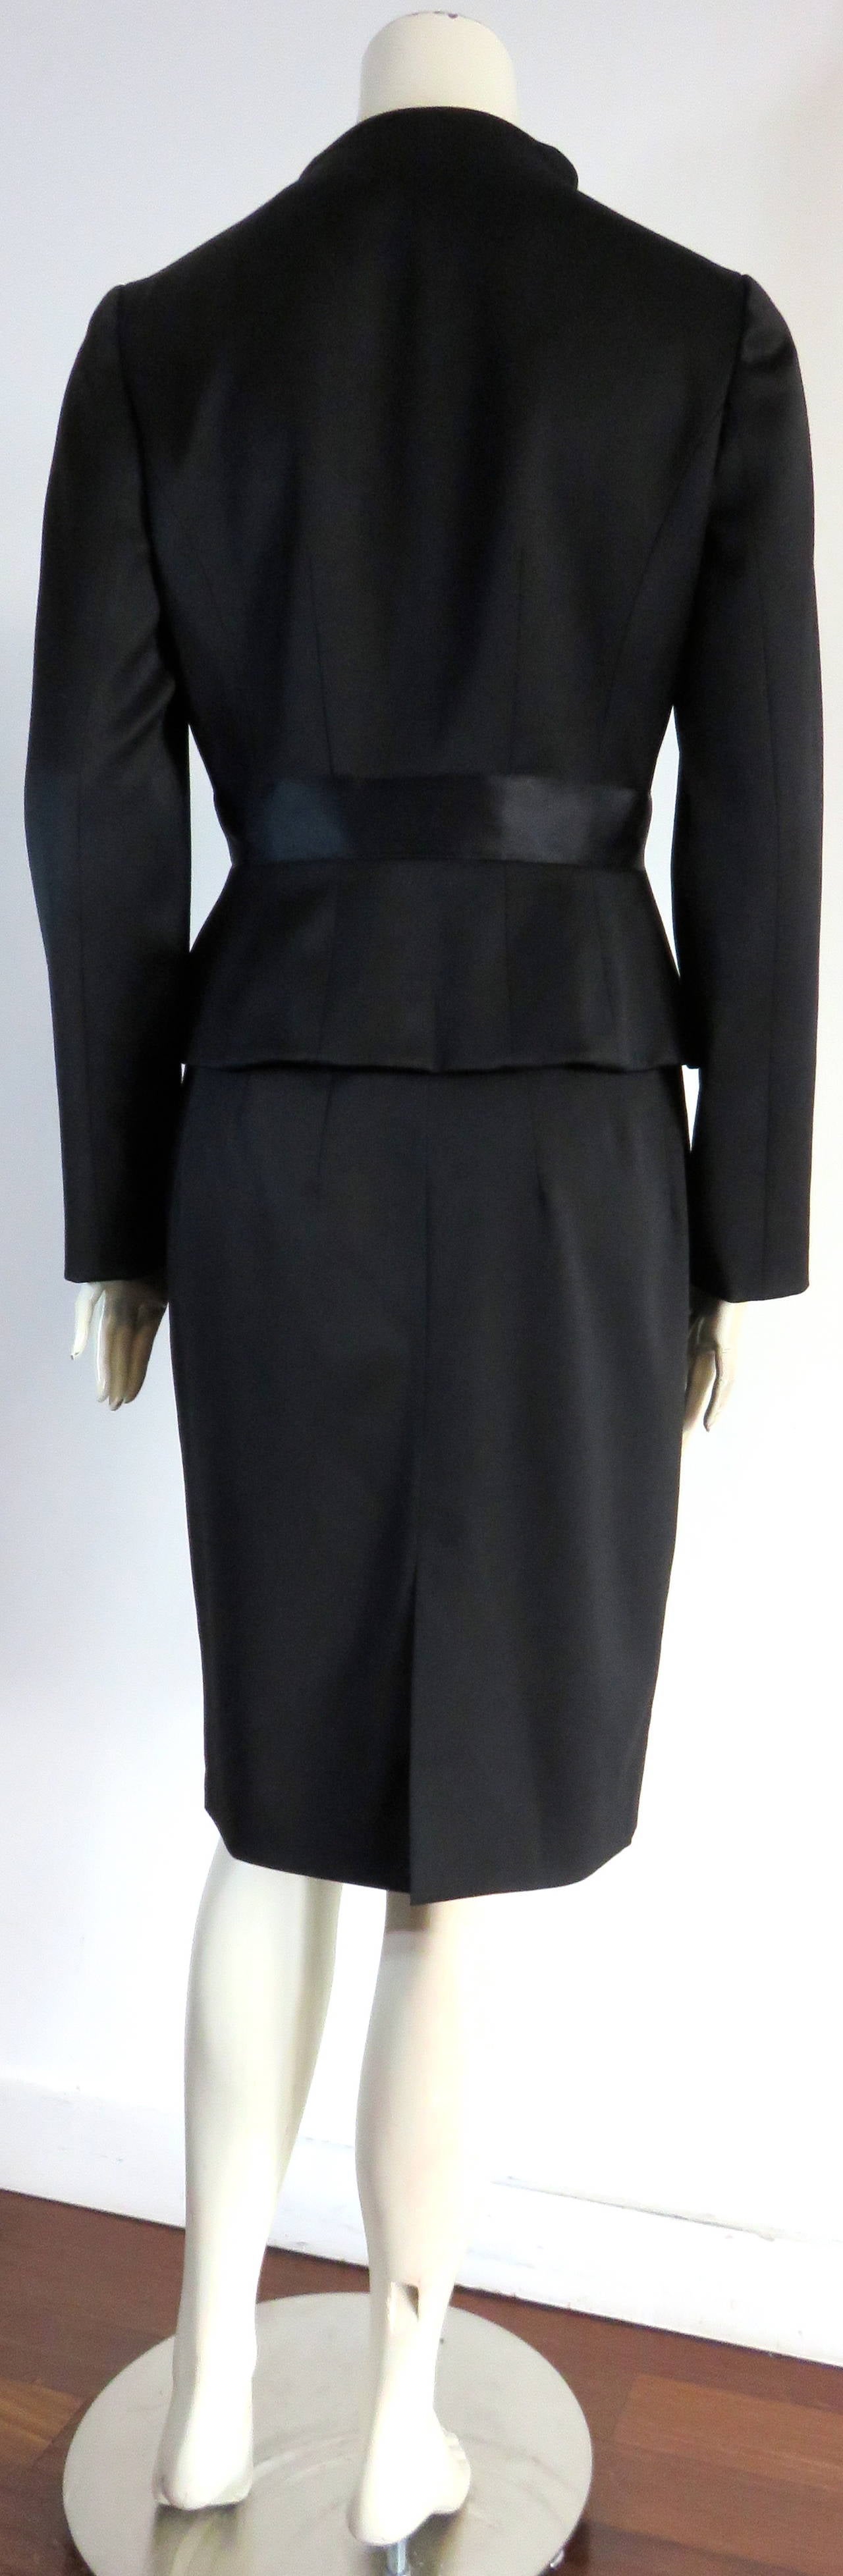 VALENTINO Ruffle detail skirt suit 4